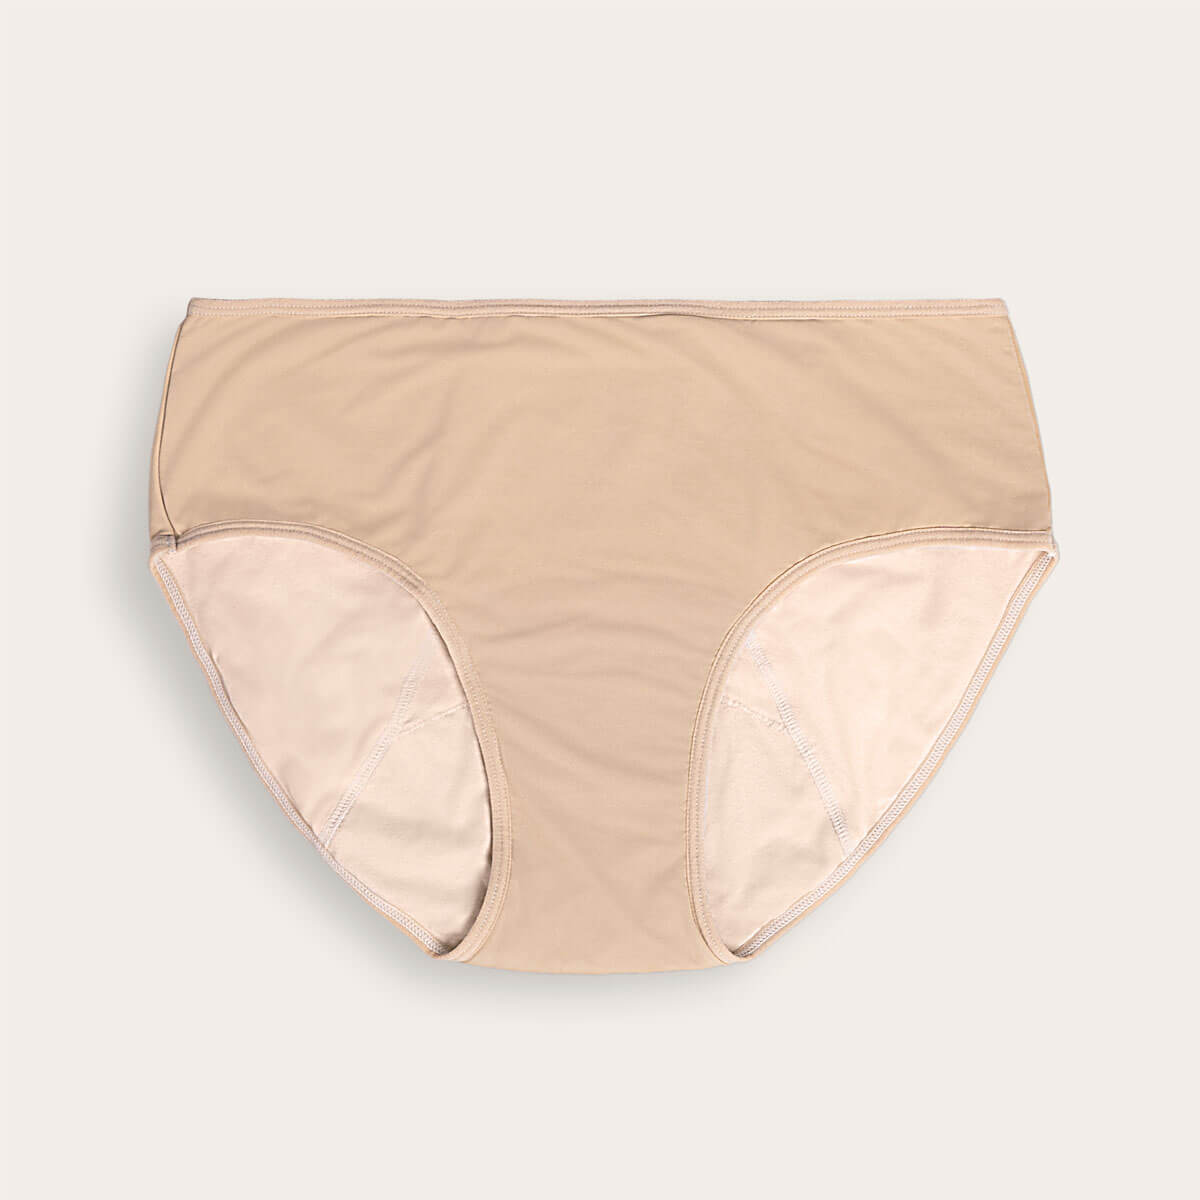 Beige period underwear